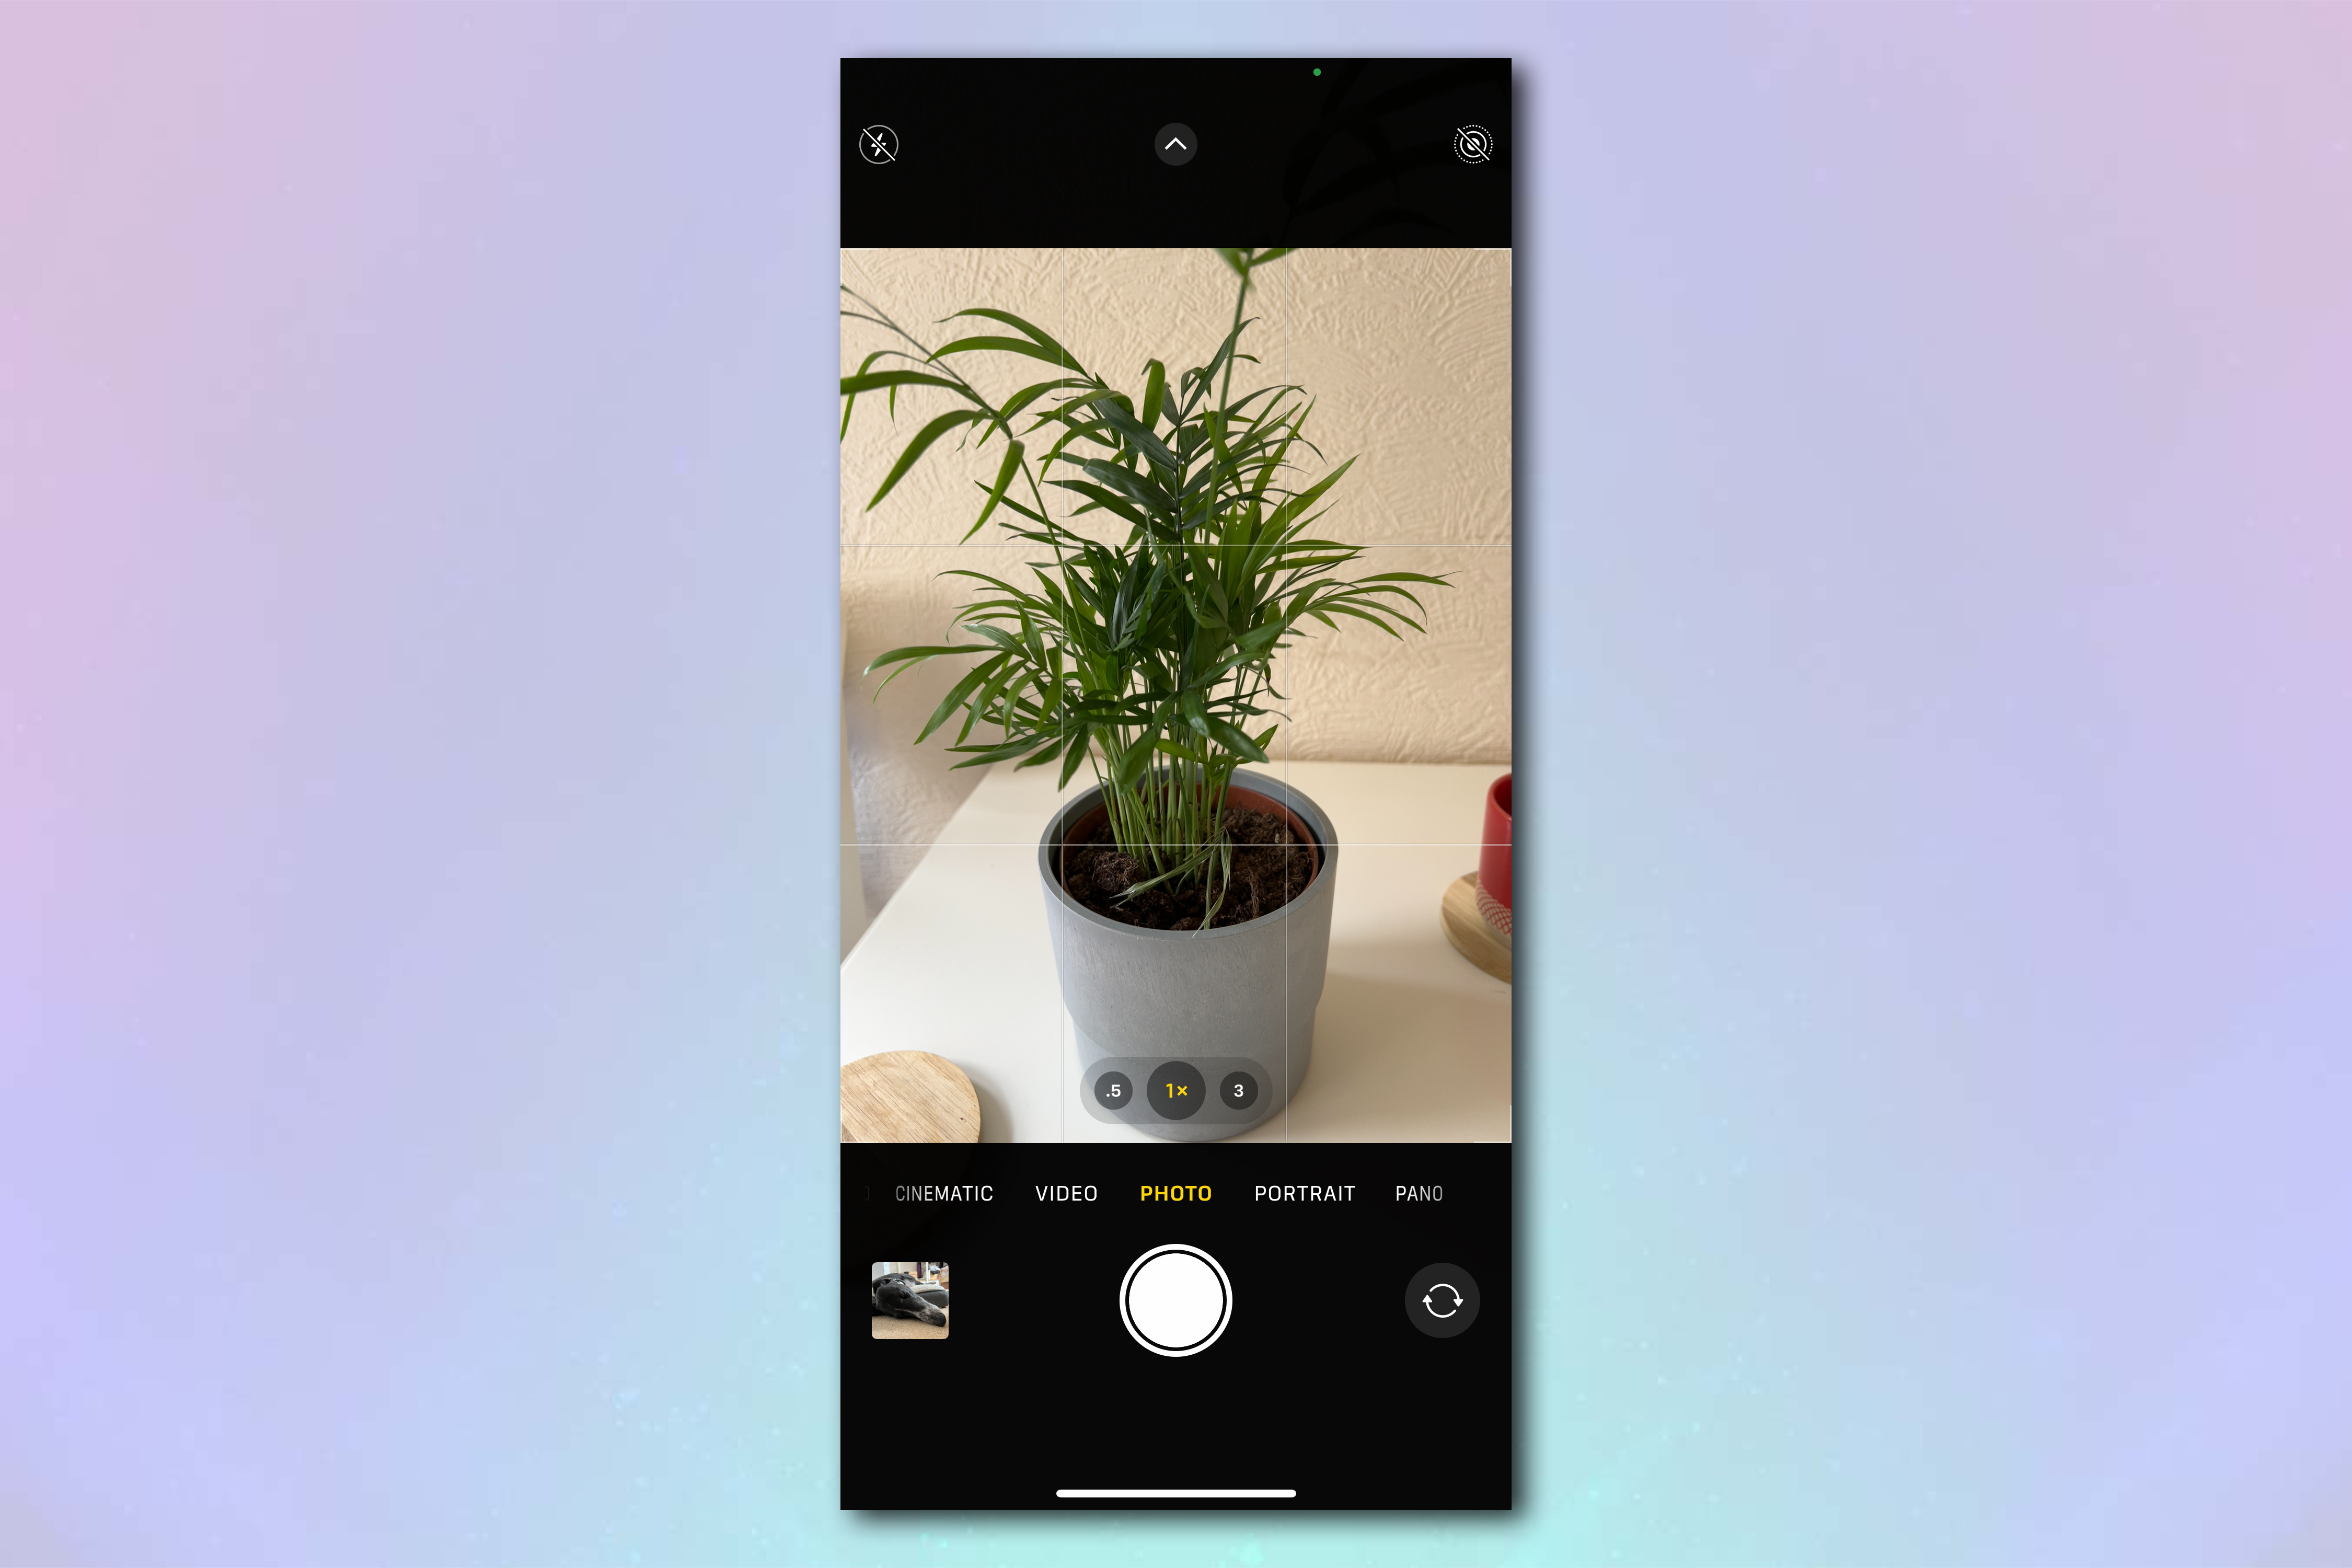 Скриншот экрана камеры iPhone: в кадре растение в горшке на белом кухонном столе.